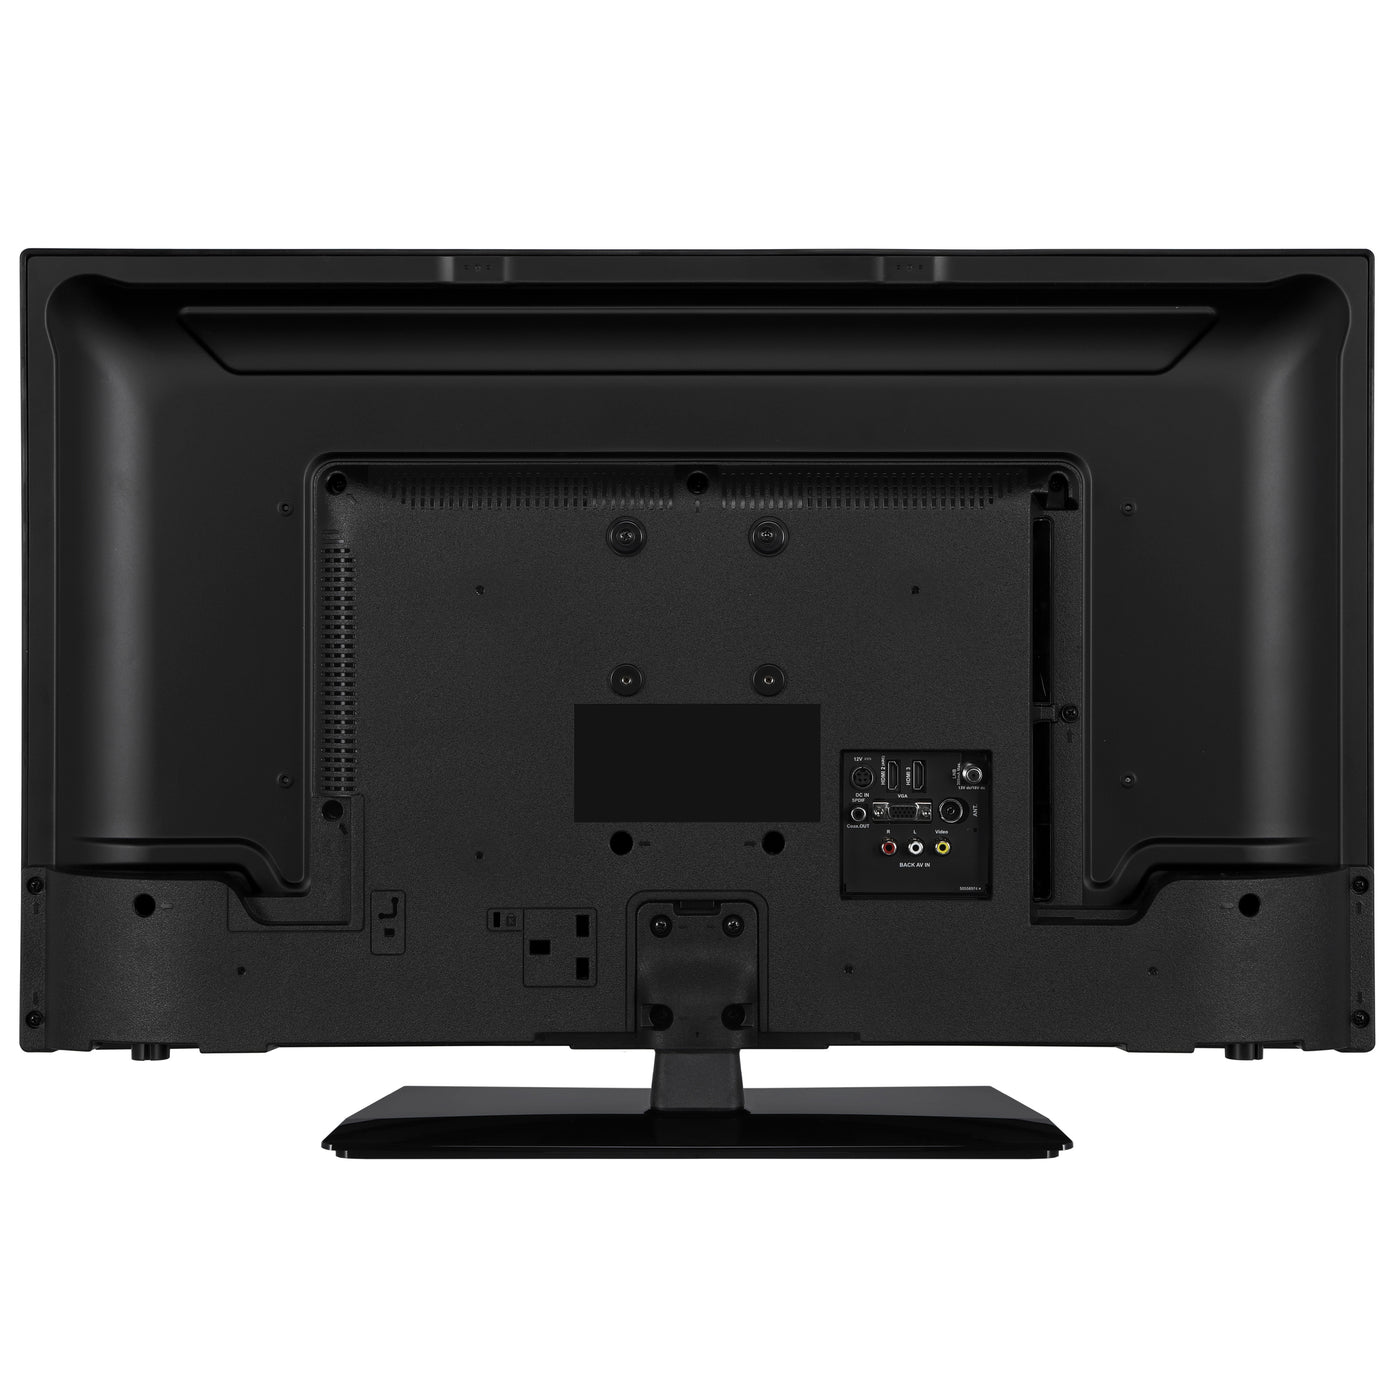 Lenco LED-3263BK - 32-Zoll Android-Smart-TV mit 12-V-Kfz-Adapter, schwarz